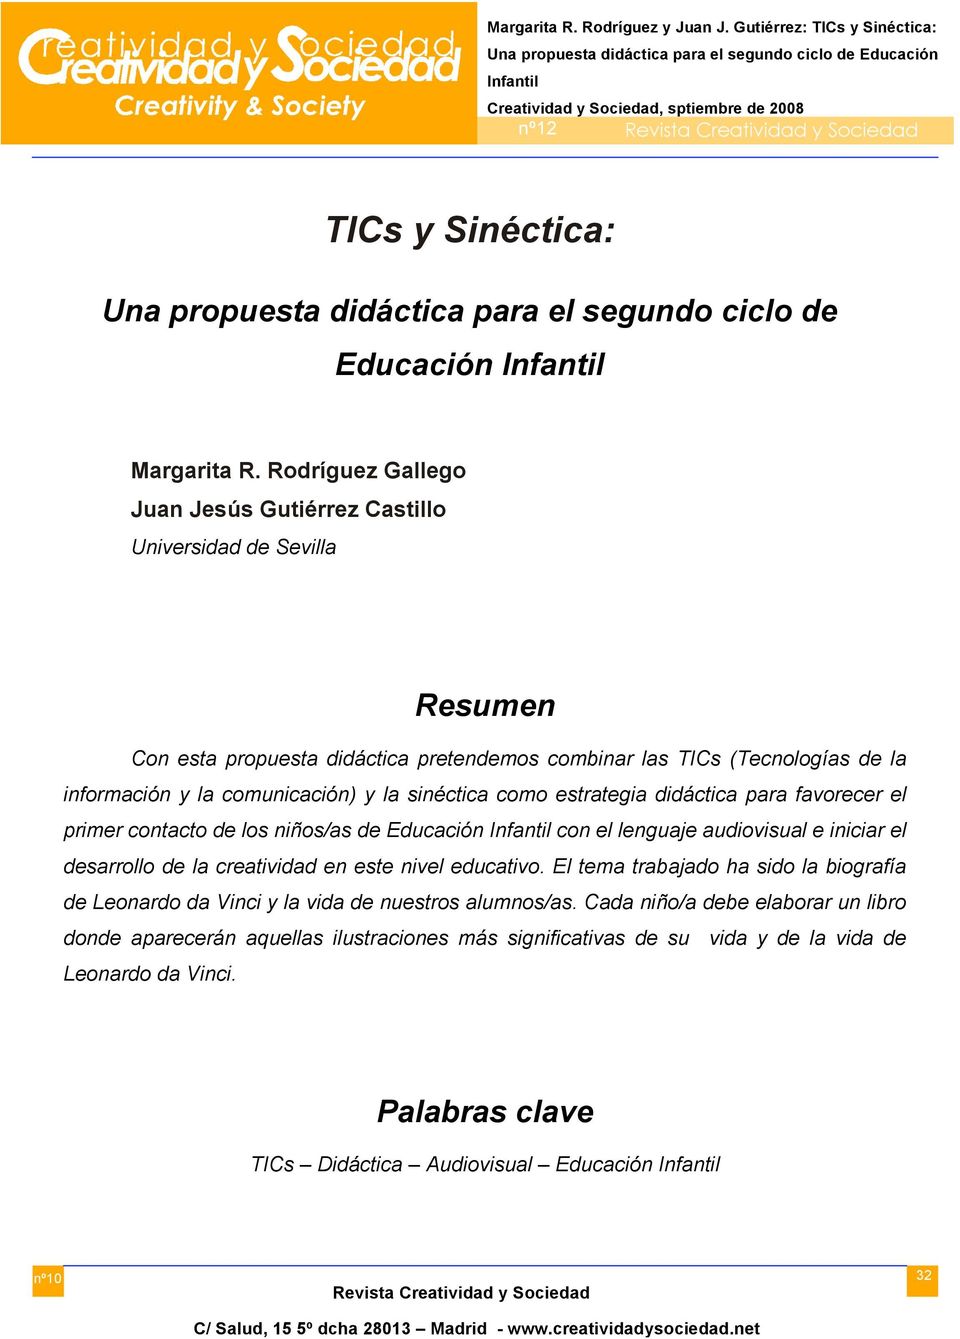 Rodríguez Gallego Juan Jesús Gutiérrez Castillo Universidad de Sevilla Resumen Con esta propuesta didáctica pretendemos combinar las TICs (Tecnologías de la información y la comunicación) y la